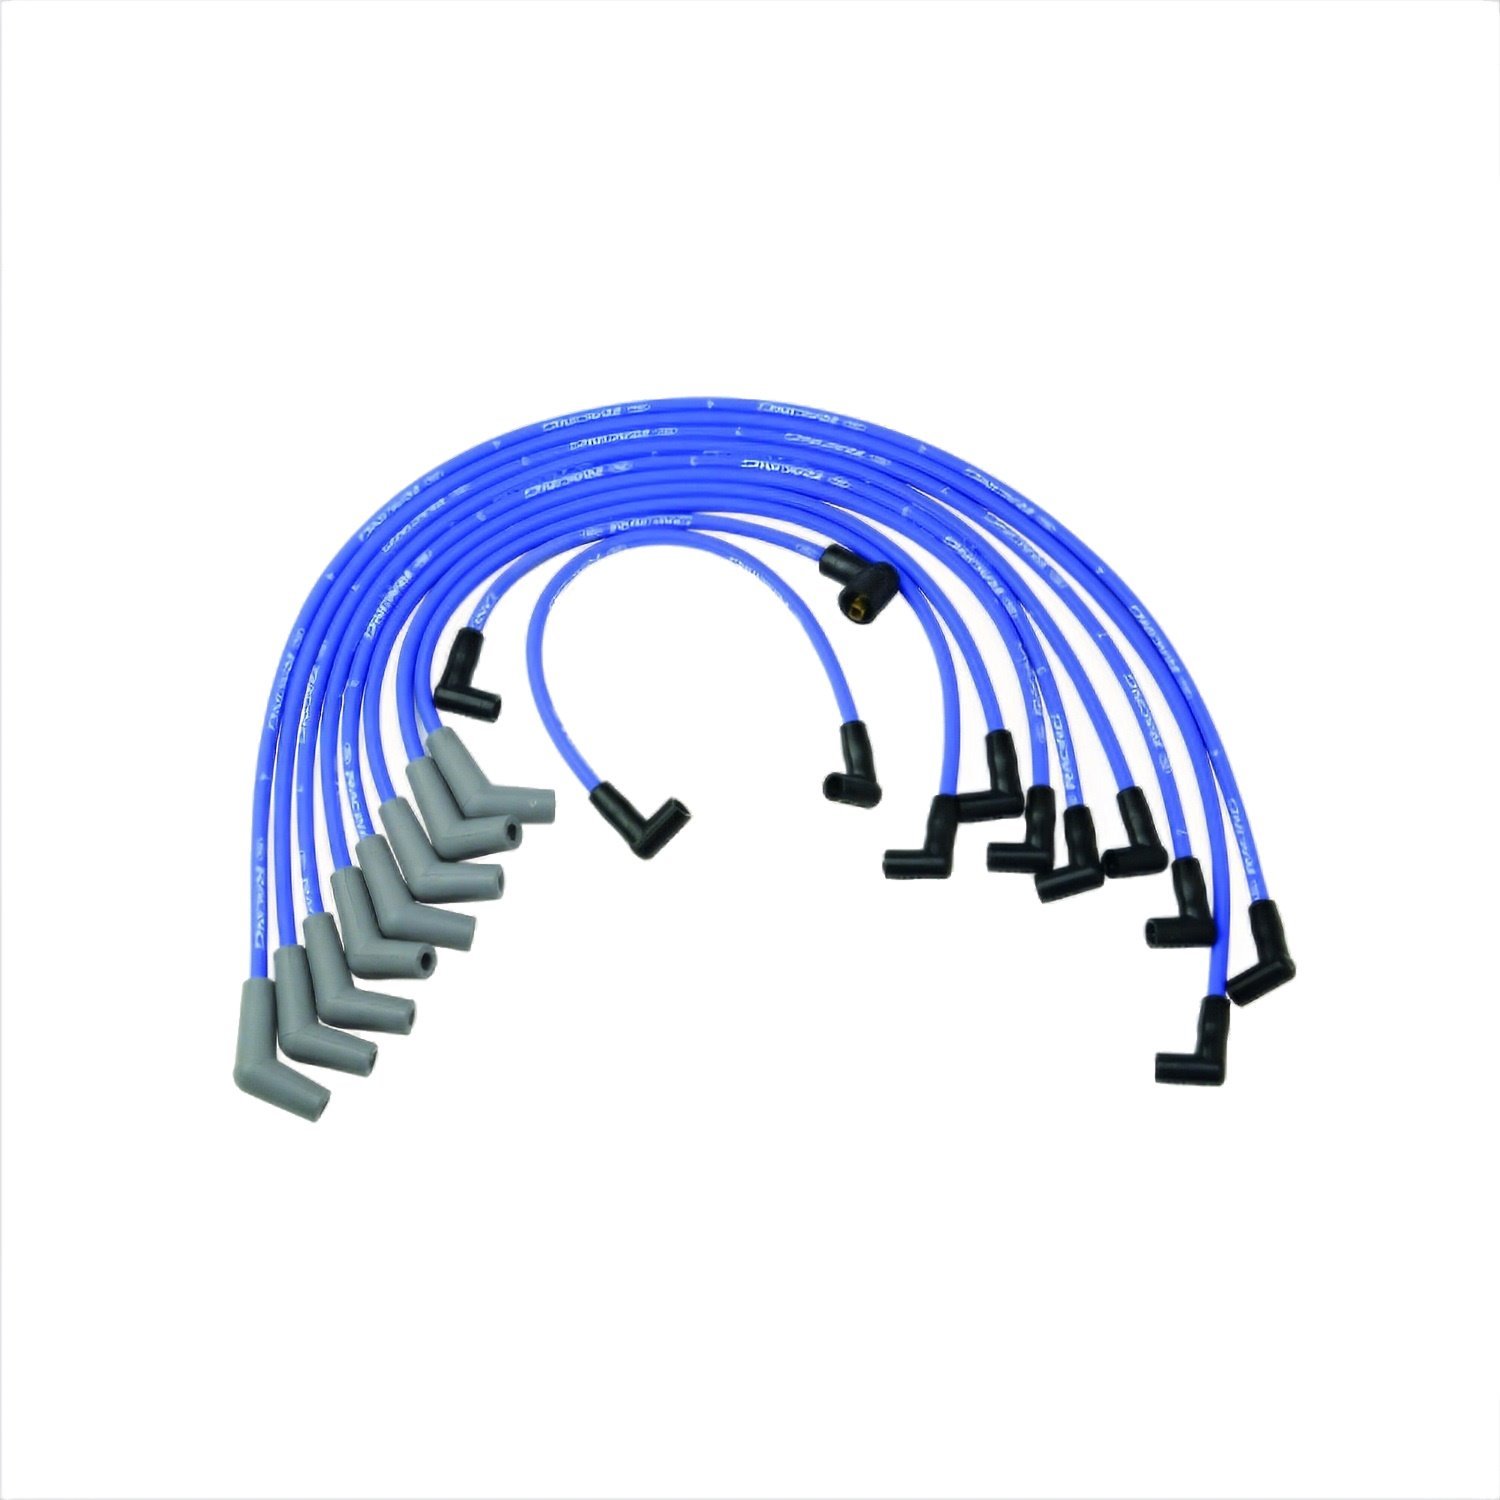 Spark Plug Wire Set Fits 7.0/7.5L V8 Engines